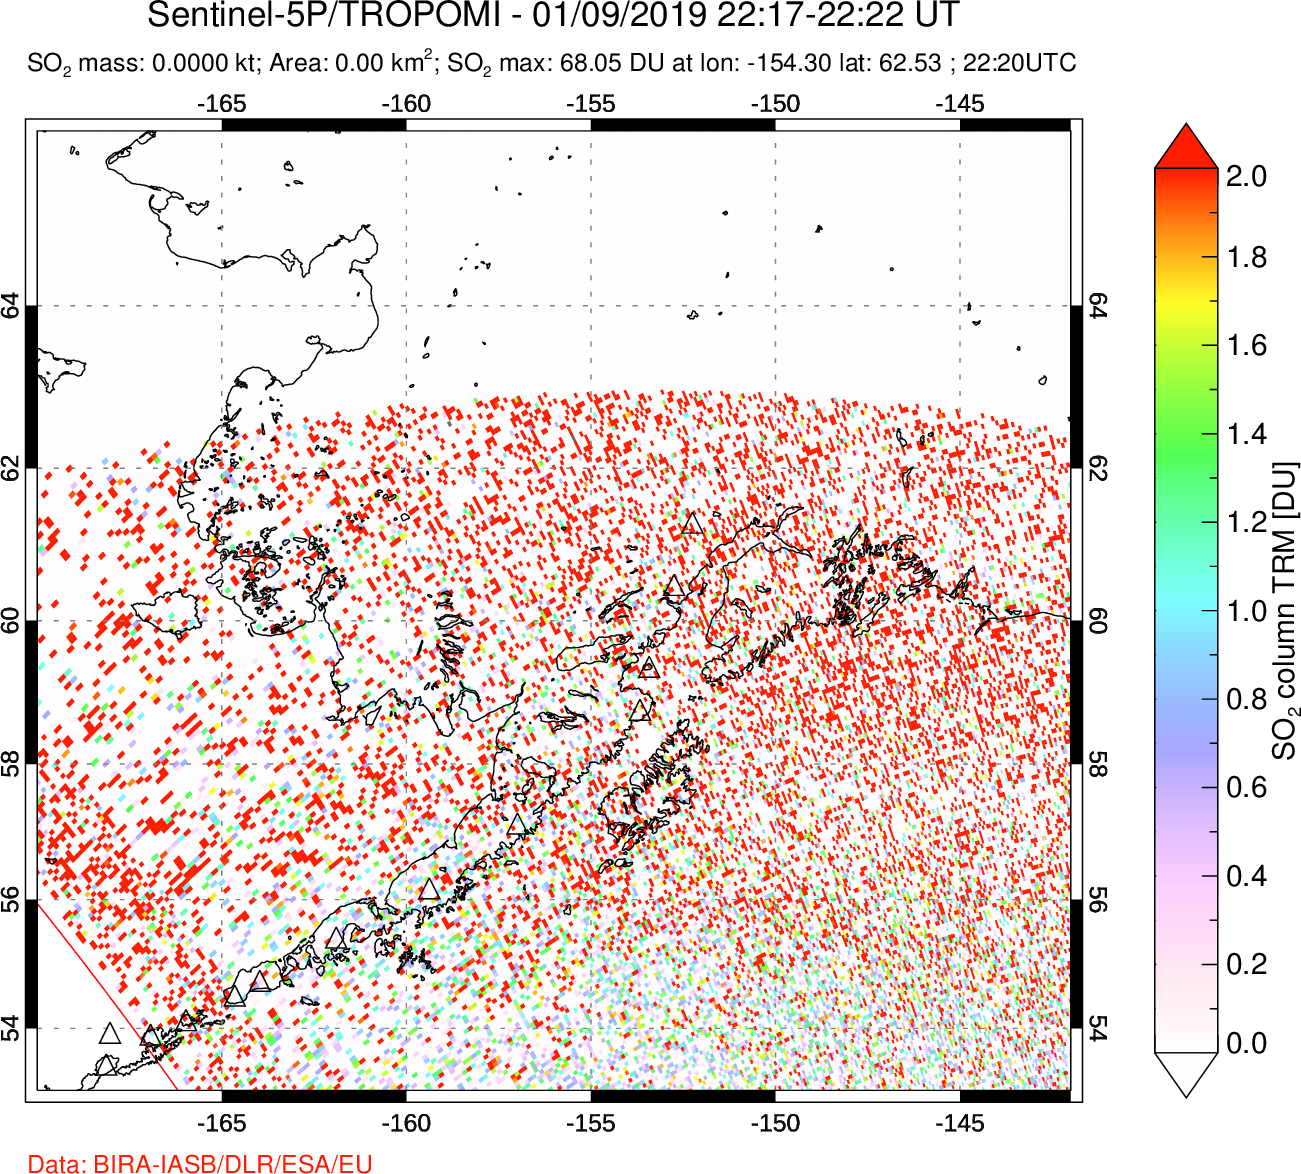 A sulfur dioxide image over Alaska, USA on Jan 09, 2019.